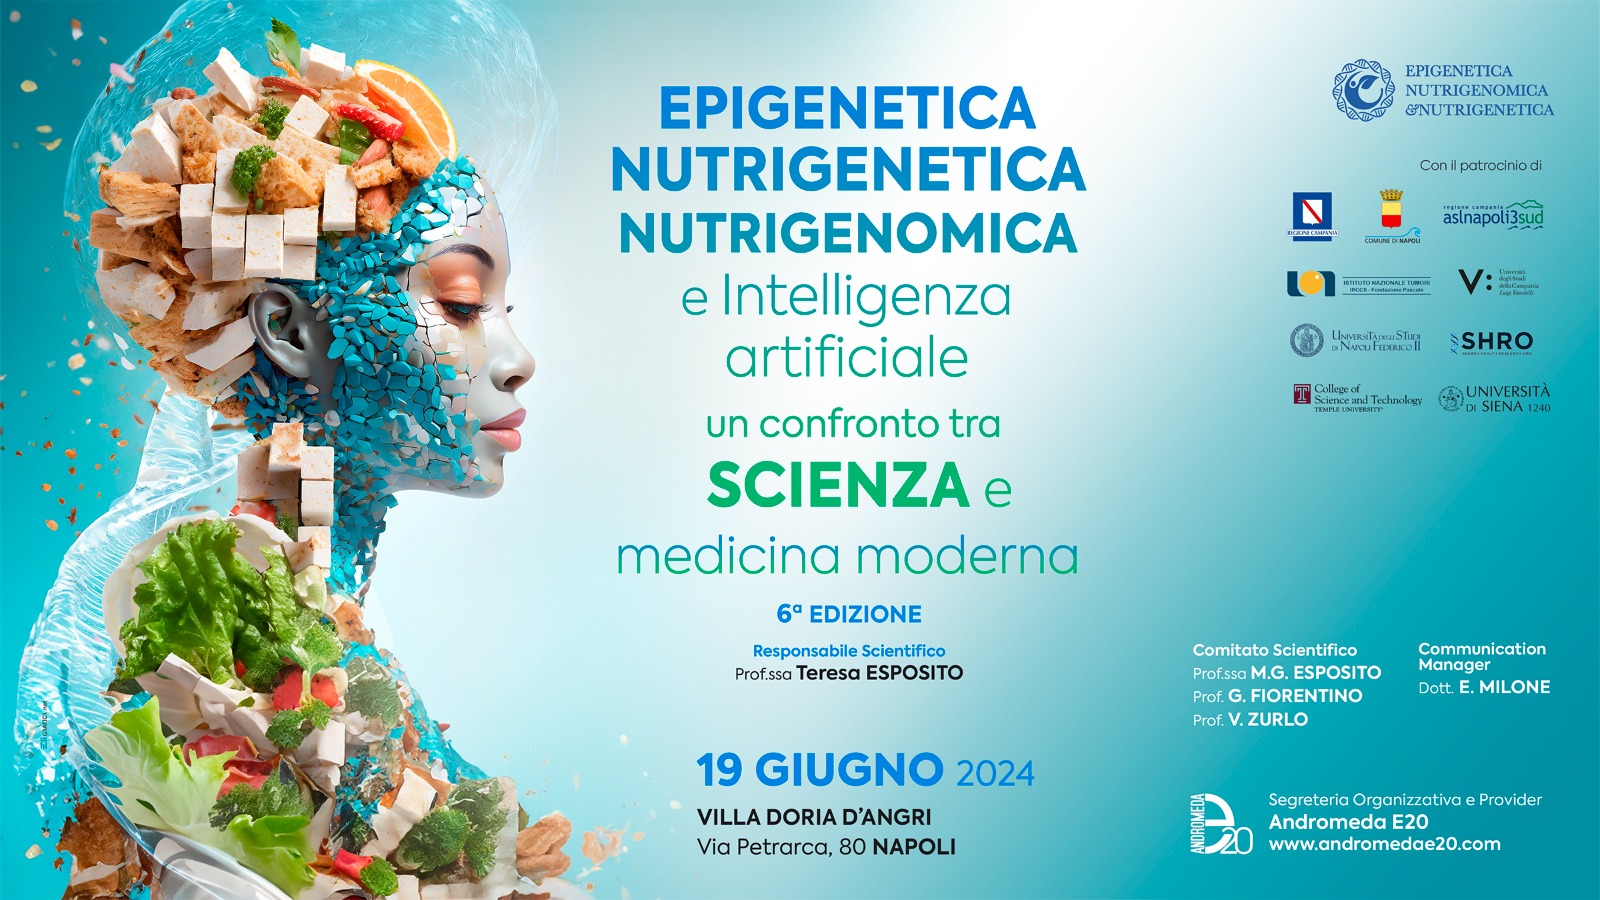 Epigenetica, nutrigenetica, nutrigenomica e Intelligenza Artificiale: il confronto a Napoli – Playlist video